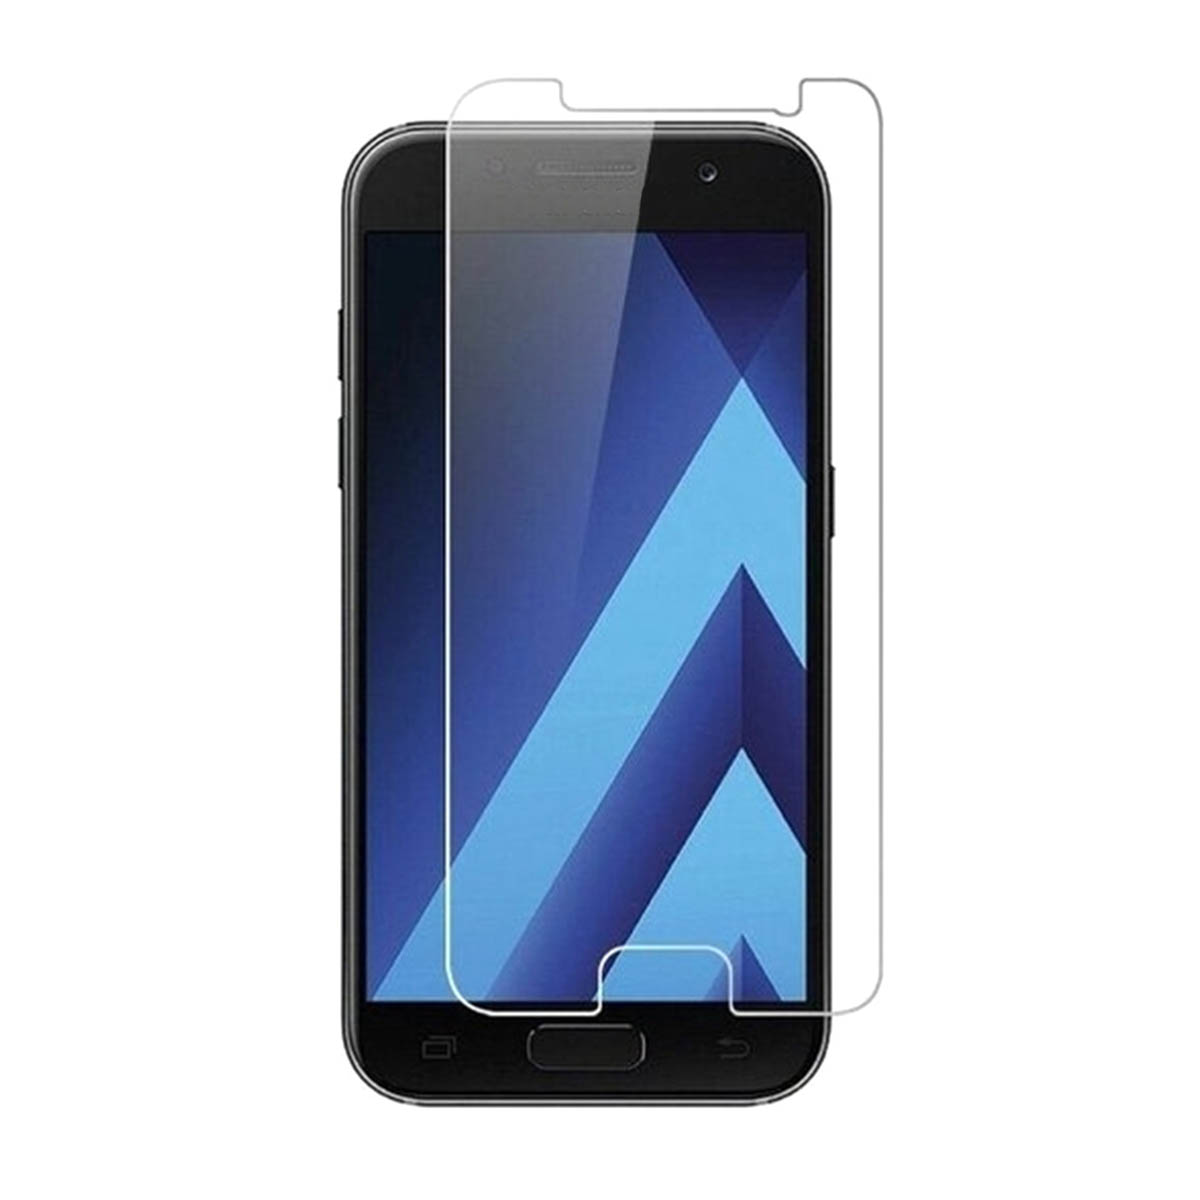 Защитное стекло для SAMSUNG Galaxy A5 2017 (SM-A520F), цвет прозрачный